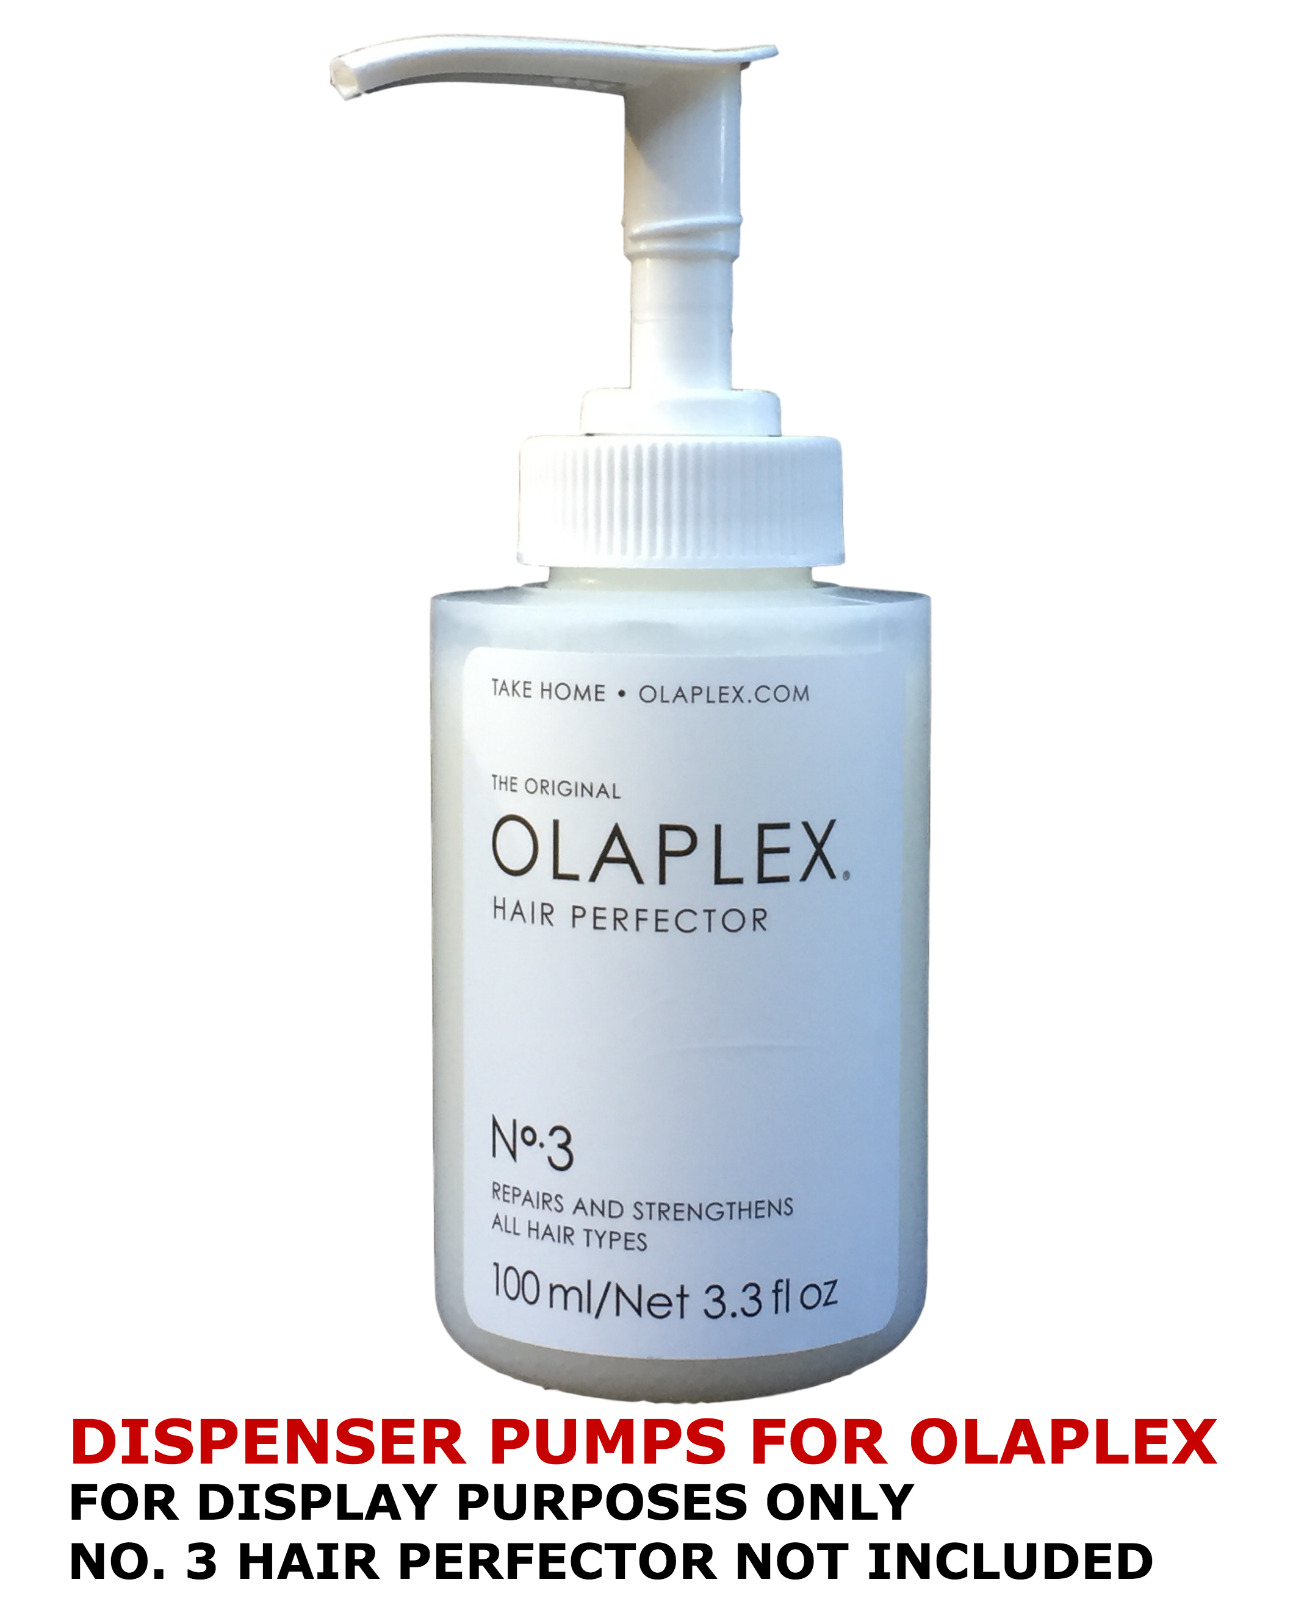 Olaplex Dispenser Pumps for No. 3 Hair Perfector or No. 6 Bond Smoother, Custom